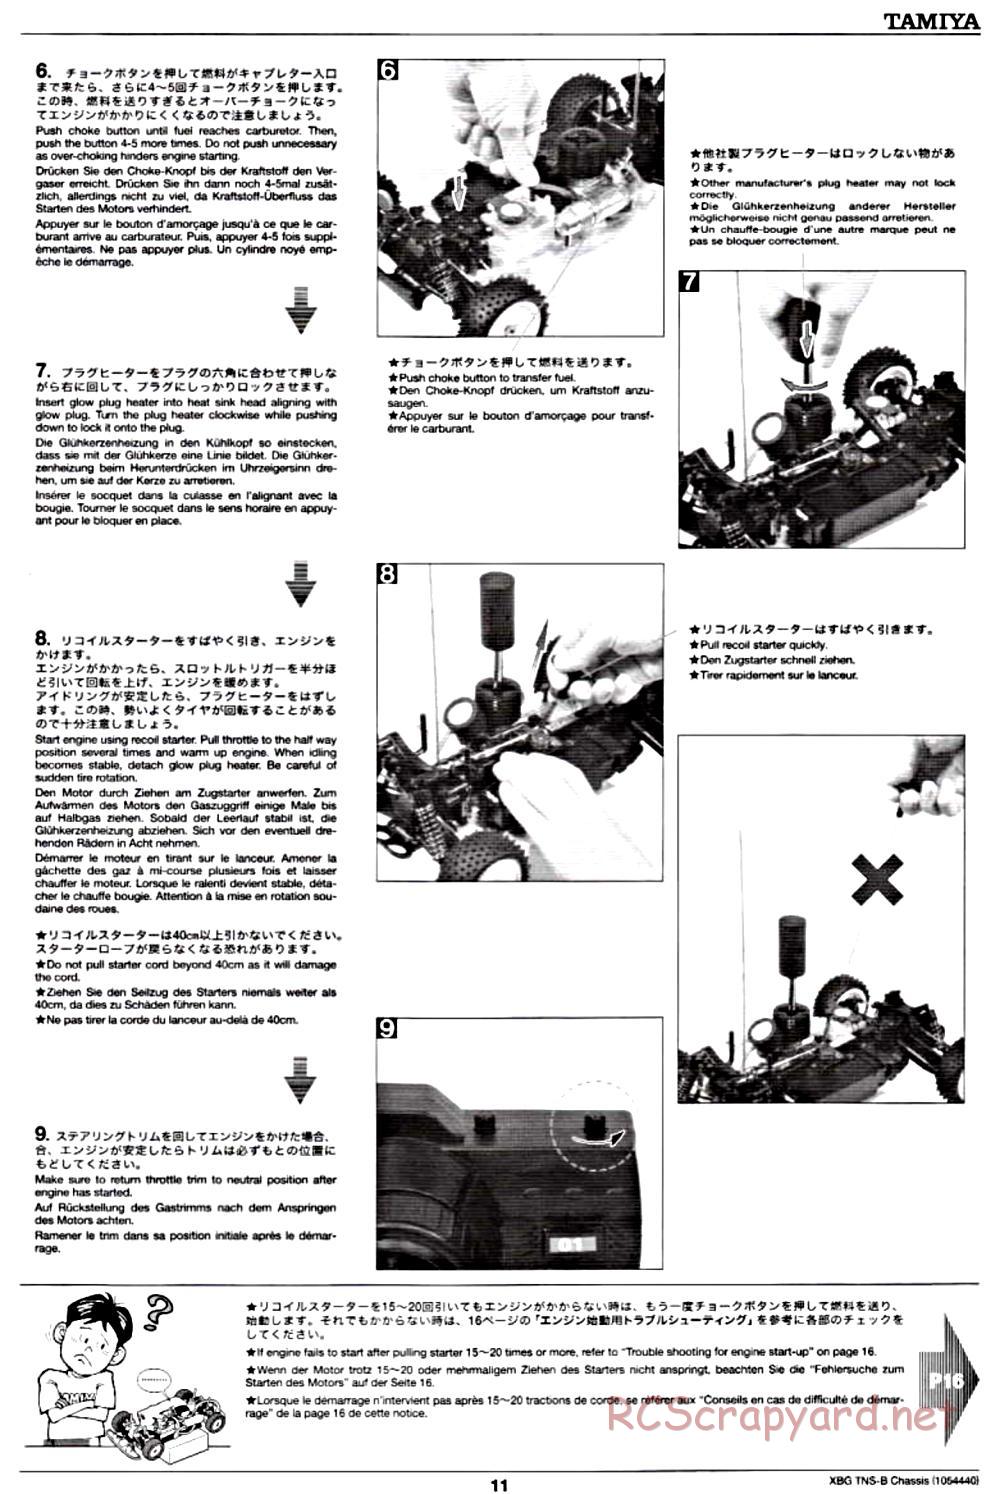 Tamiya - TNS-B Chassis - Manual - Page 11